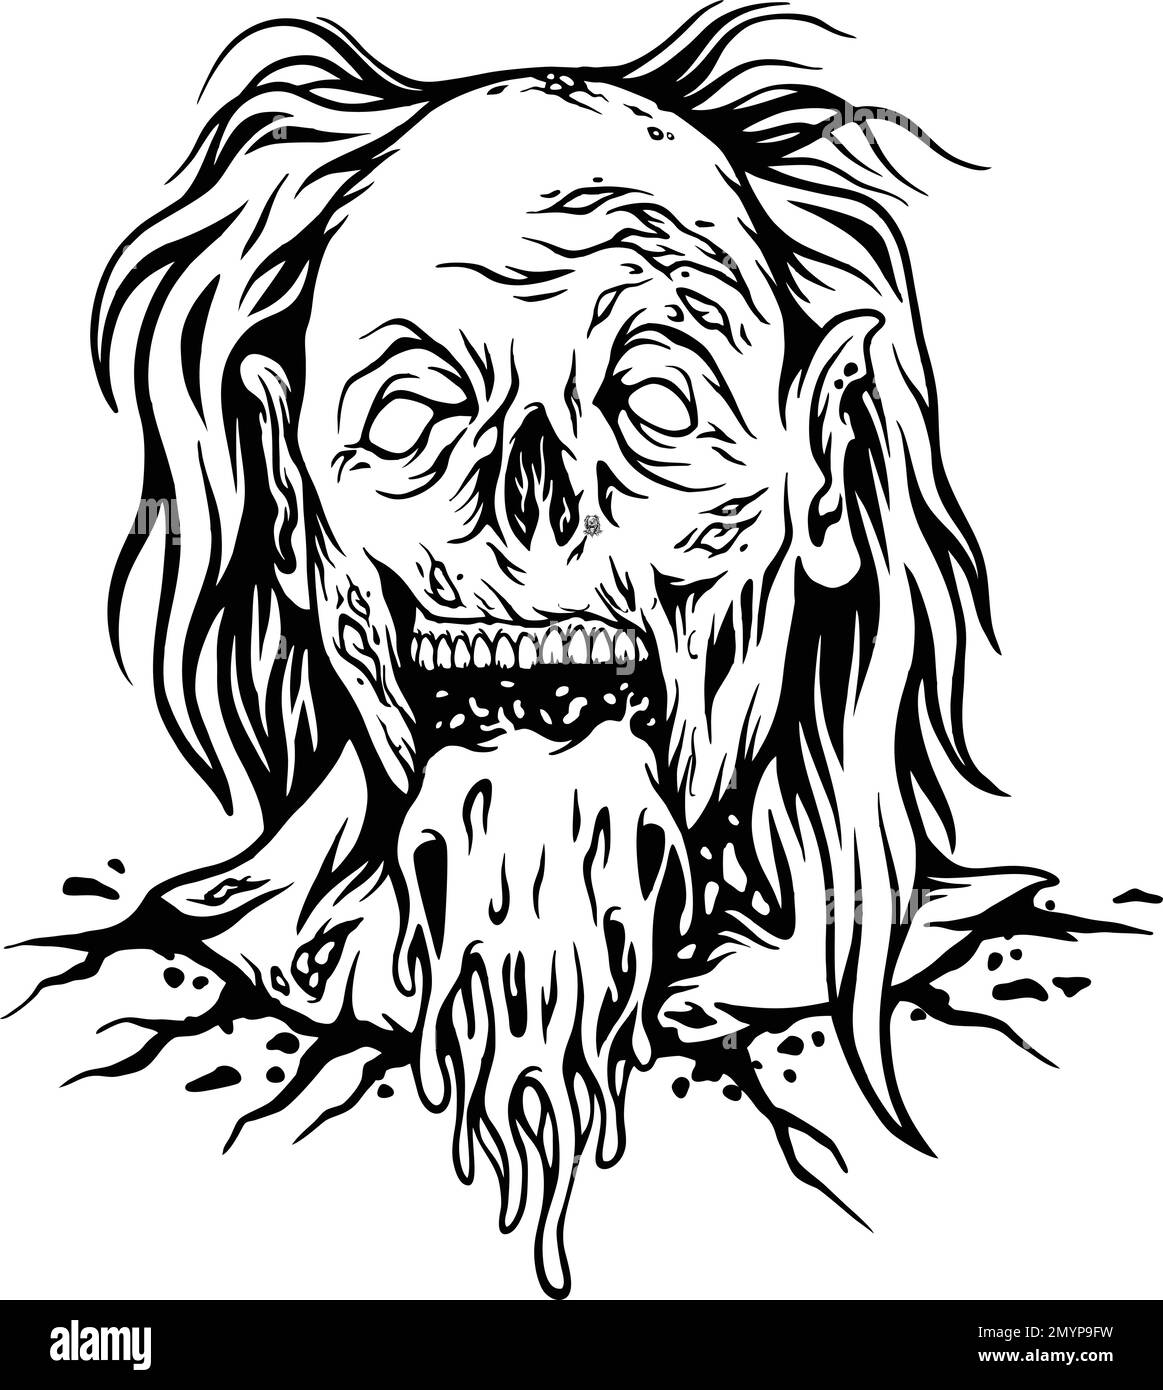 Illustration vectorielle de silhouette de tête de clown zombie pour votre logo de travail, t-shirt de marchandise, autocollants et dessins d'étiquettes, affiche, cartes de vœux Illustration de Vecteur